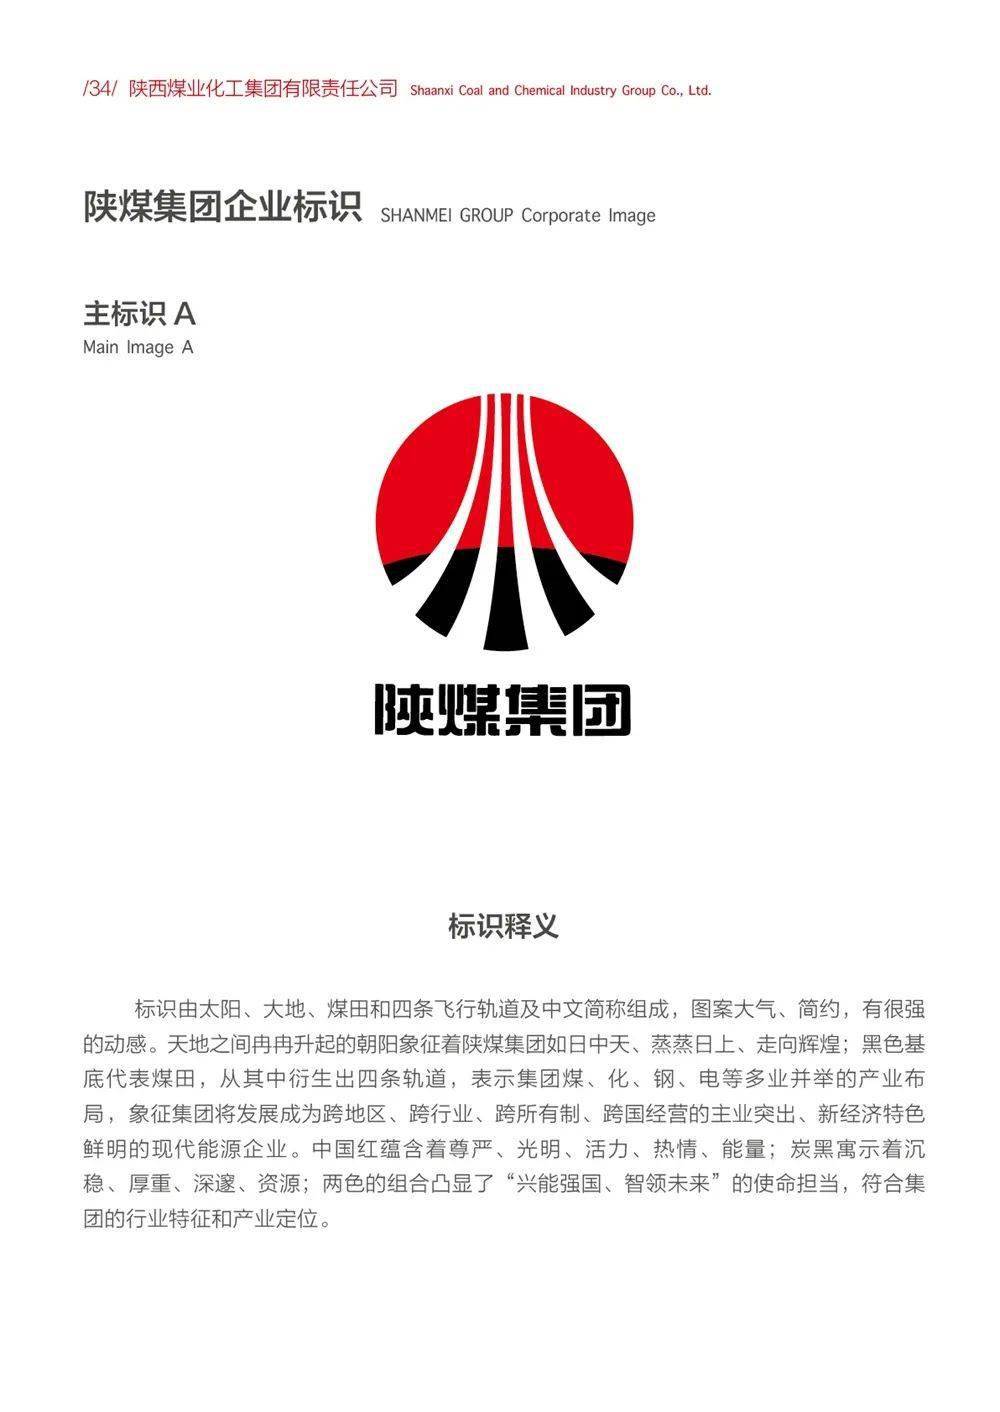 陕煤文化丨陕煤集团企业文化手册之形象识别,陕煤之声